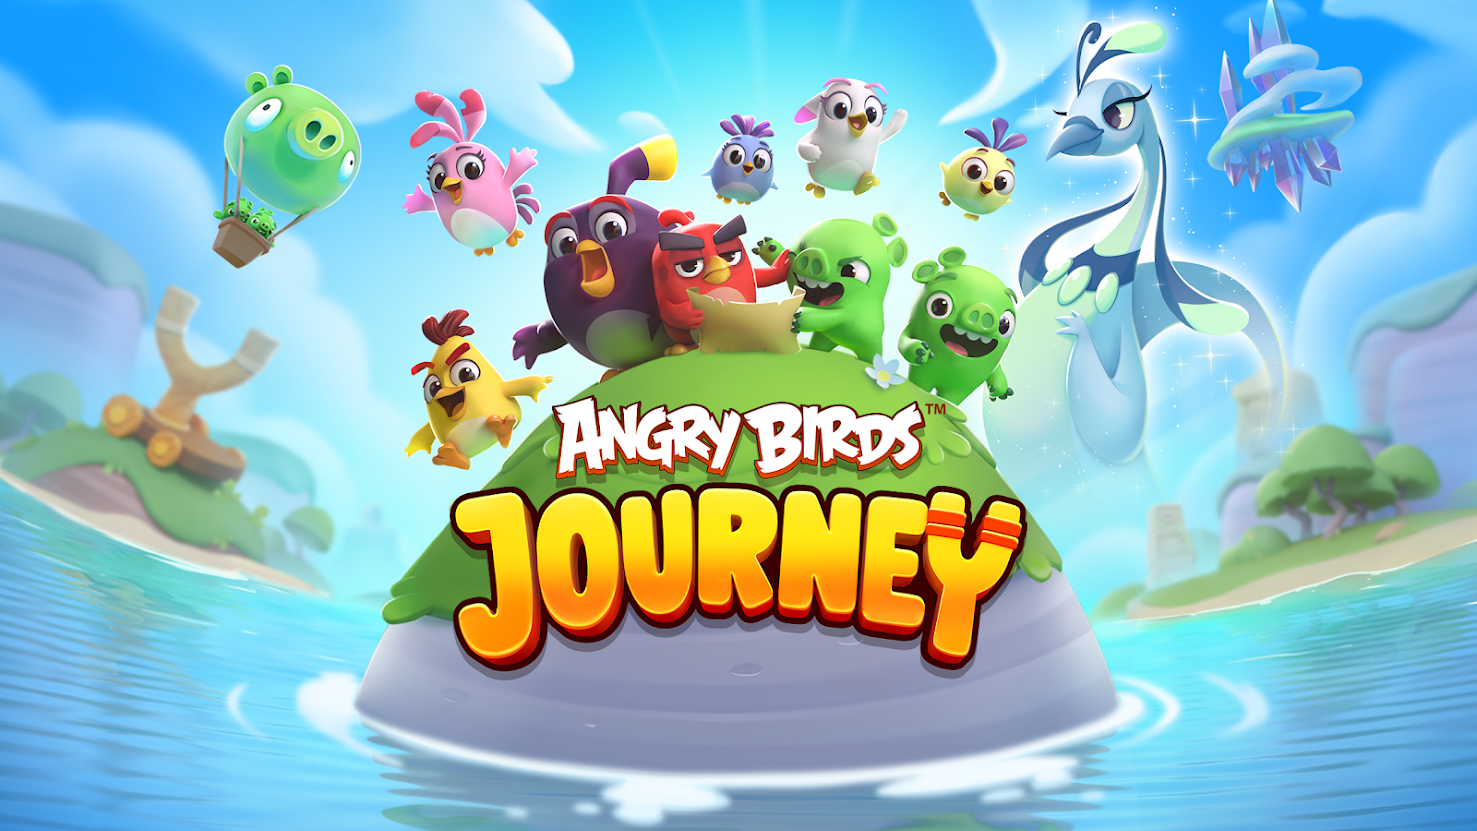 Angry Birds Journey worldwide launch hero